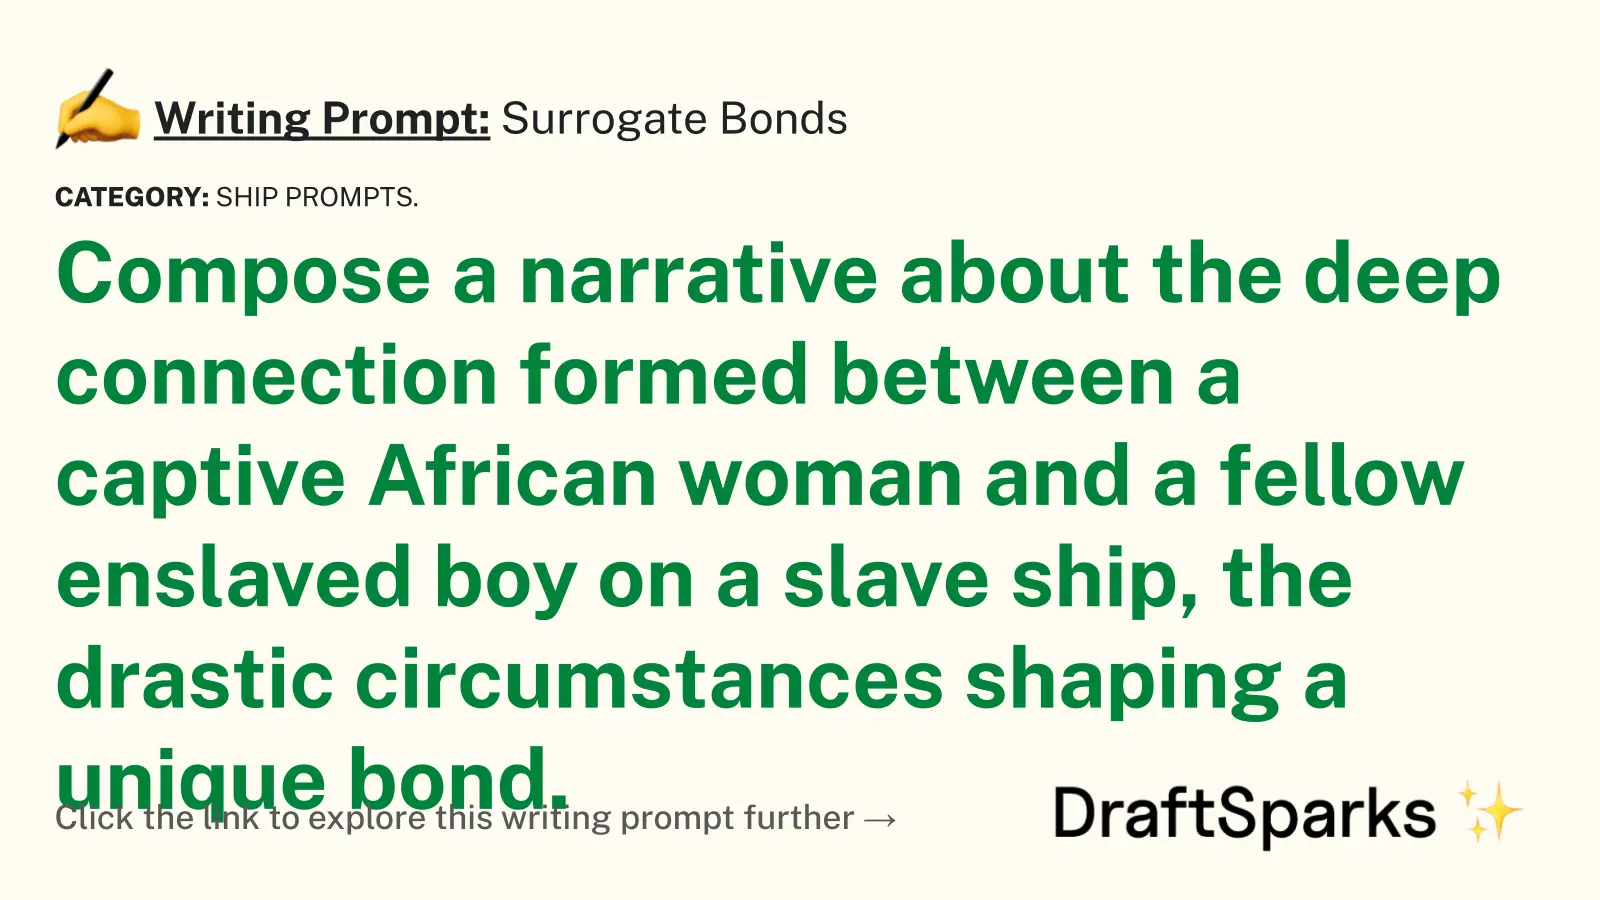 Surrogate Bonds